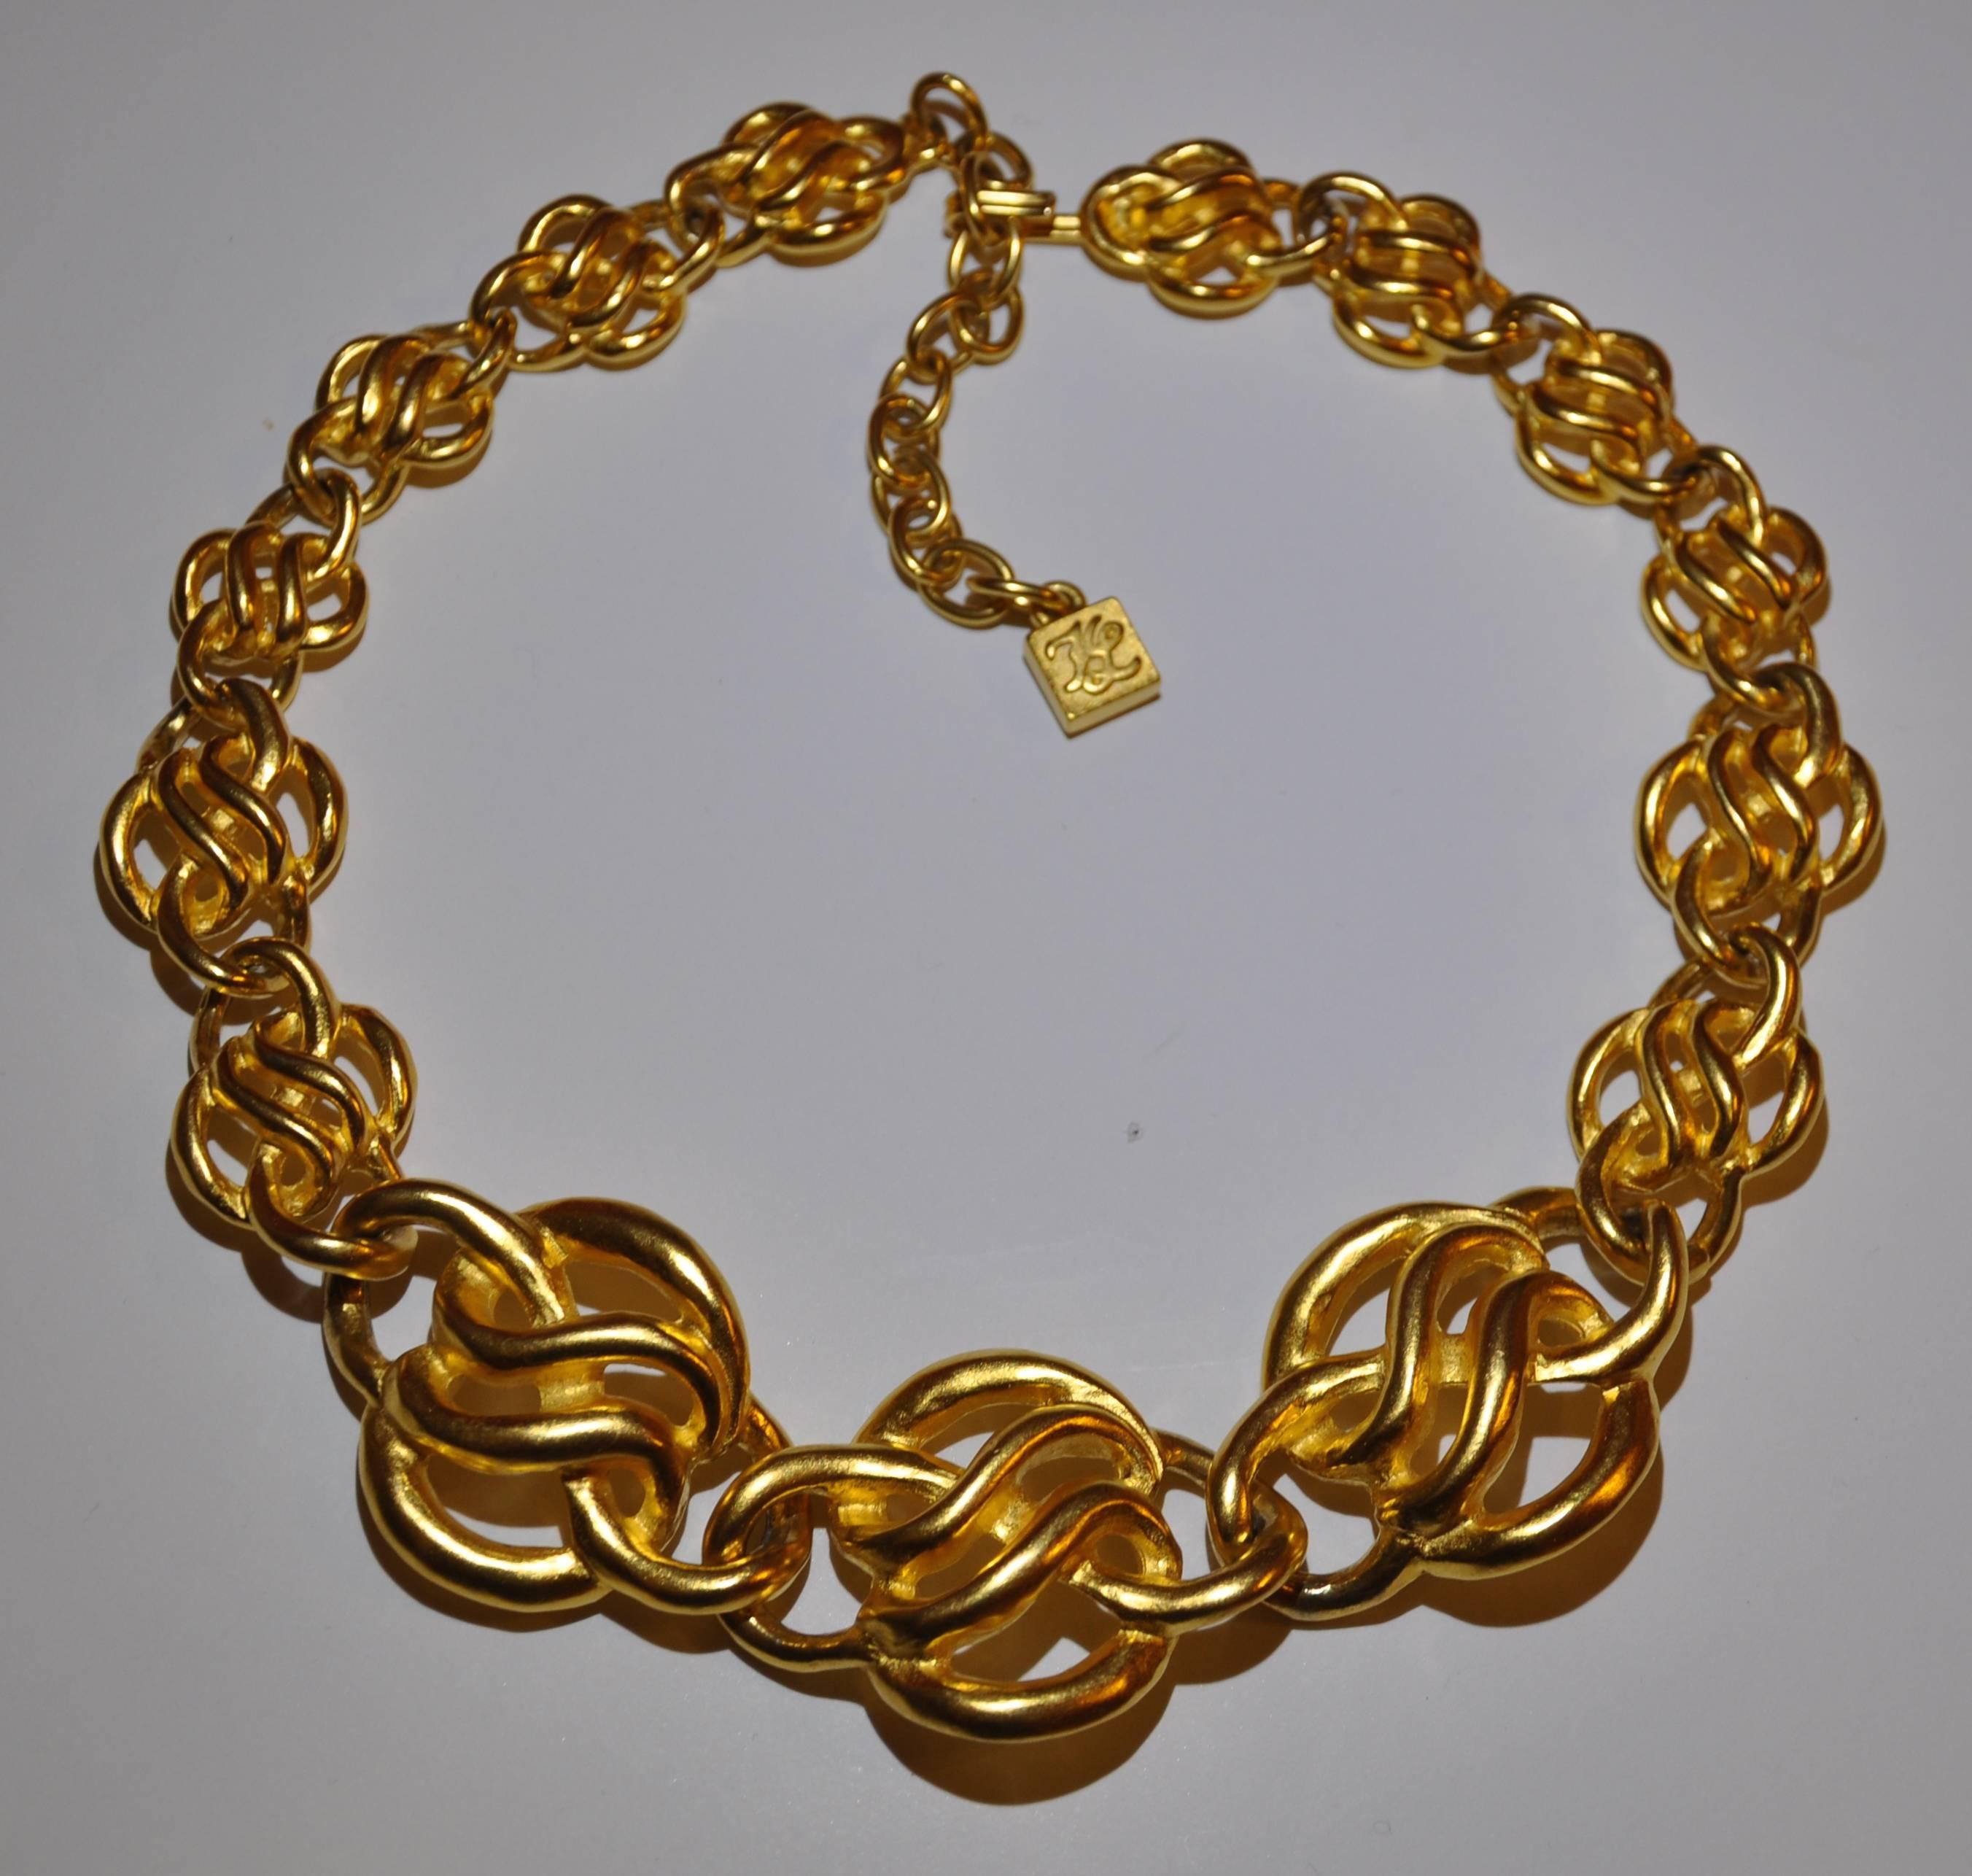      Le merveilleux collier ajustable en or doré poli de Karl Lagerfeld, terminé par un vermeil, mesure 18 1/2